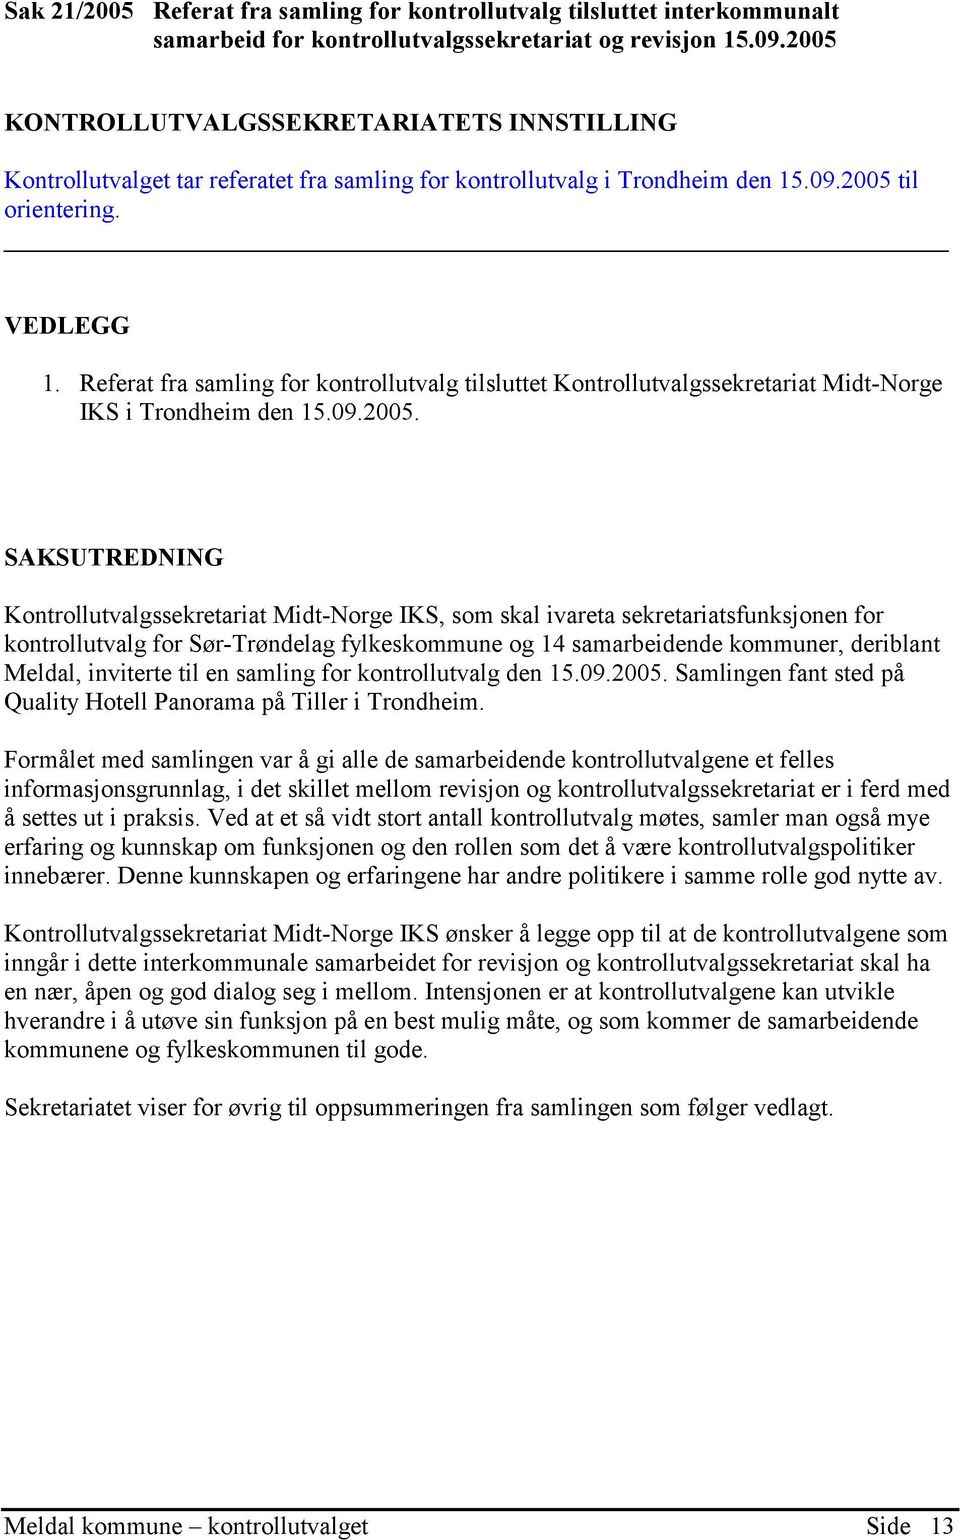 Referat fra samling for kontrollutvalg tilsluttet Kontrollutvalgssekretariat Midt-Norge IKS i Trondheim den 15.09.2005.